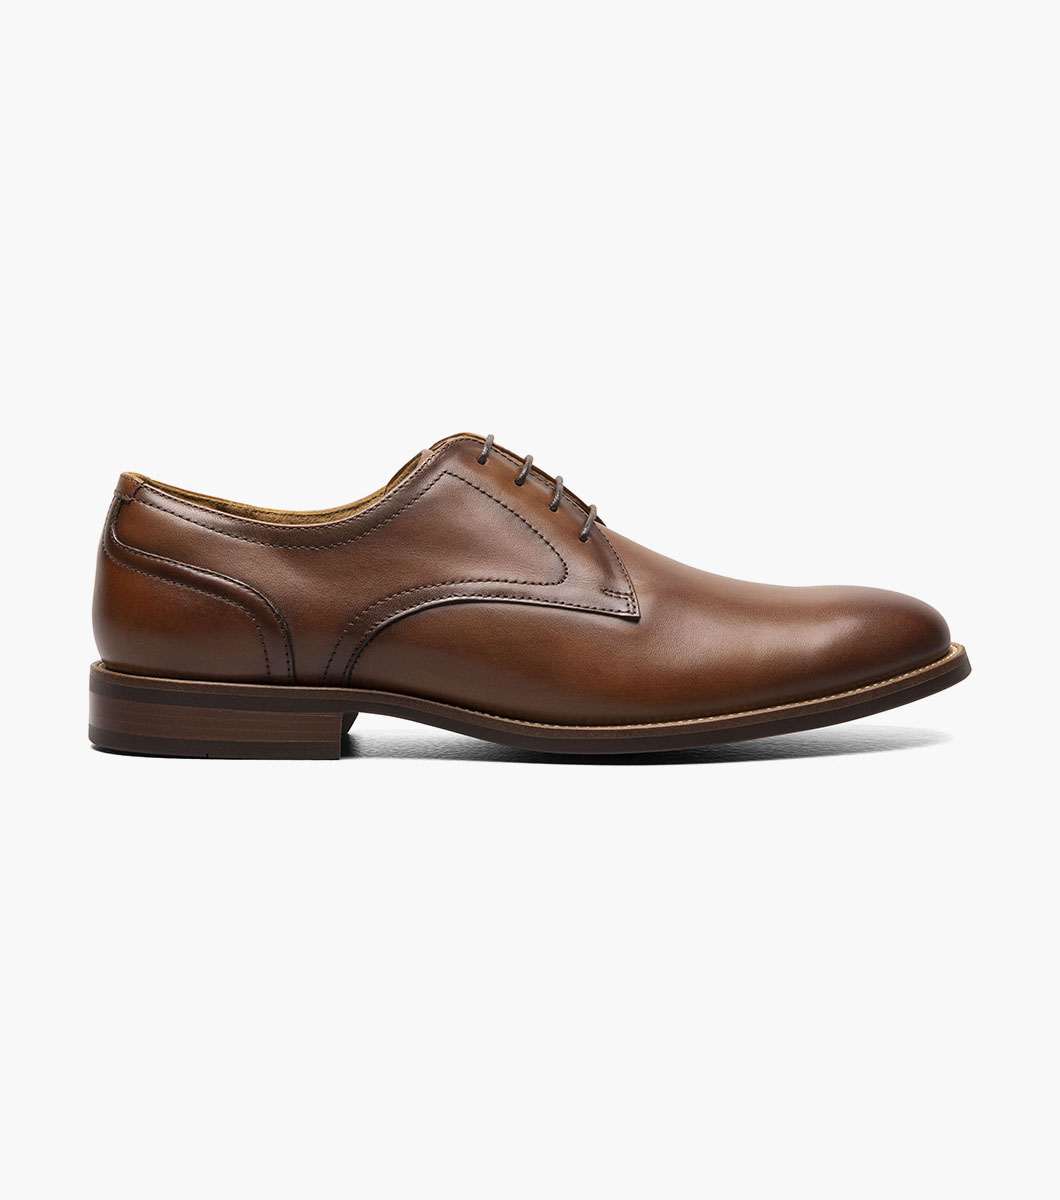 Rucci Plain Toe Oxford Men’s Dress Shoes | Florsheim.com